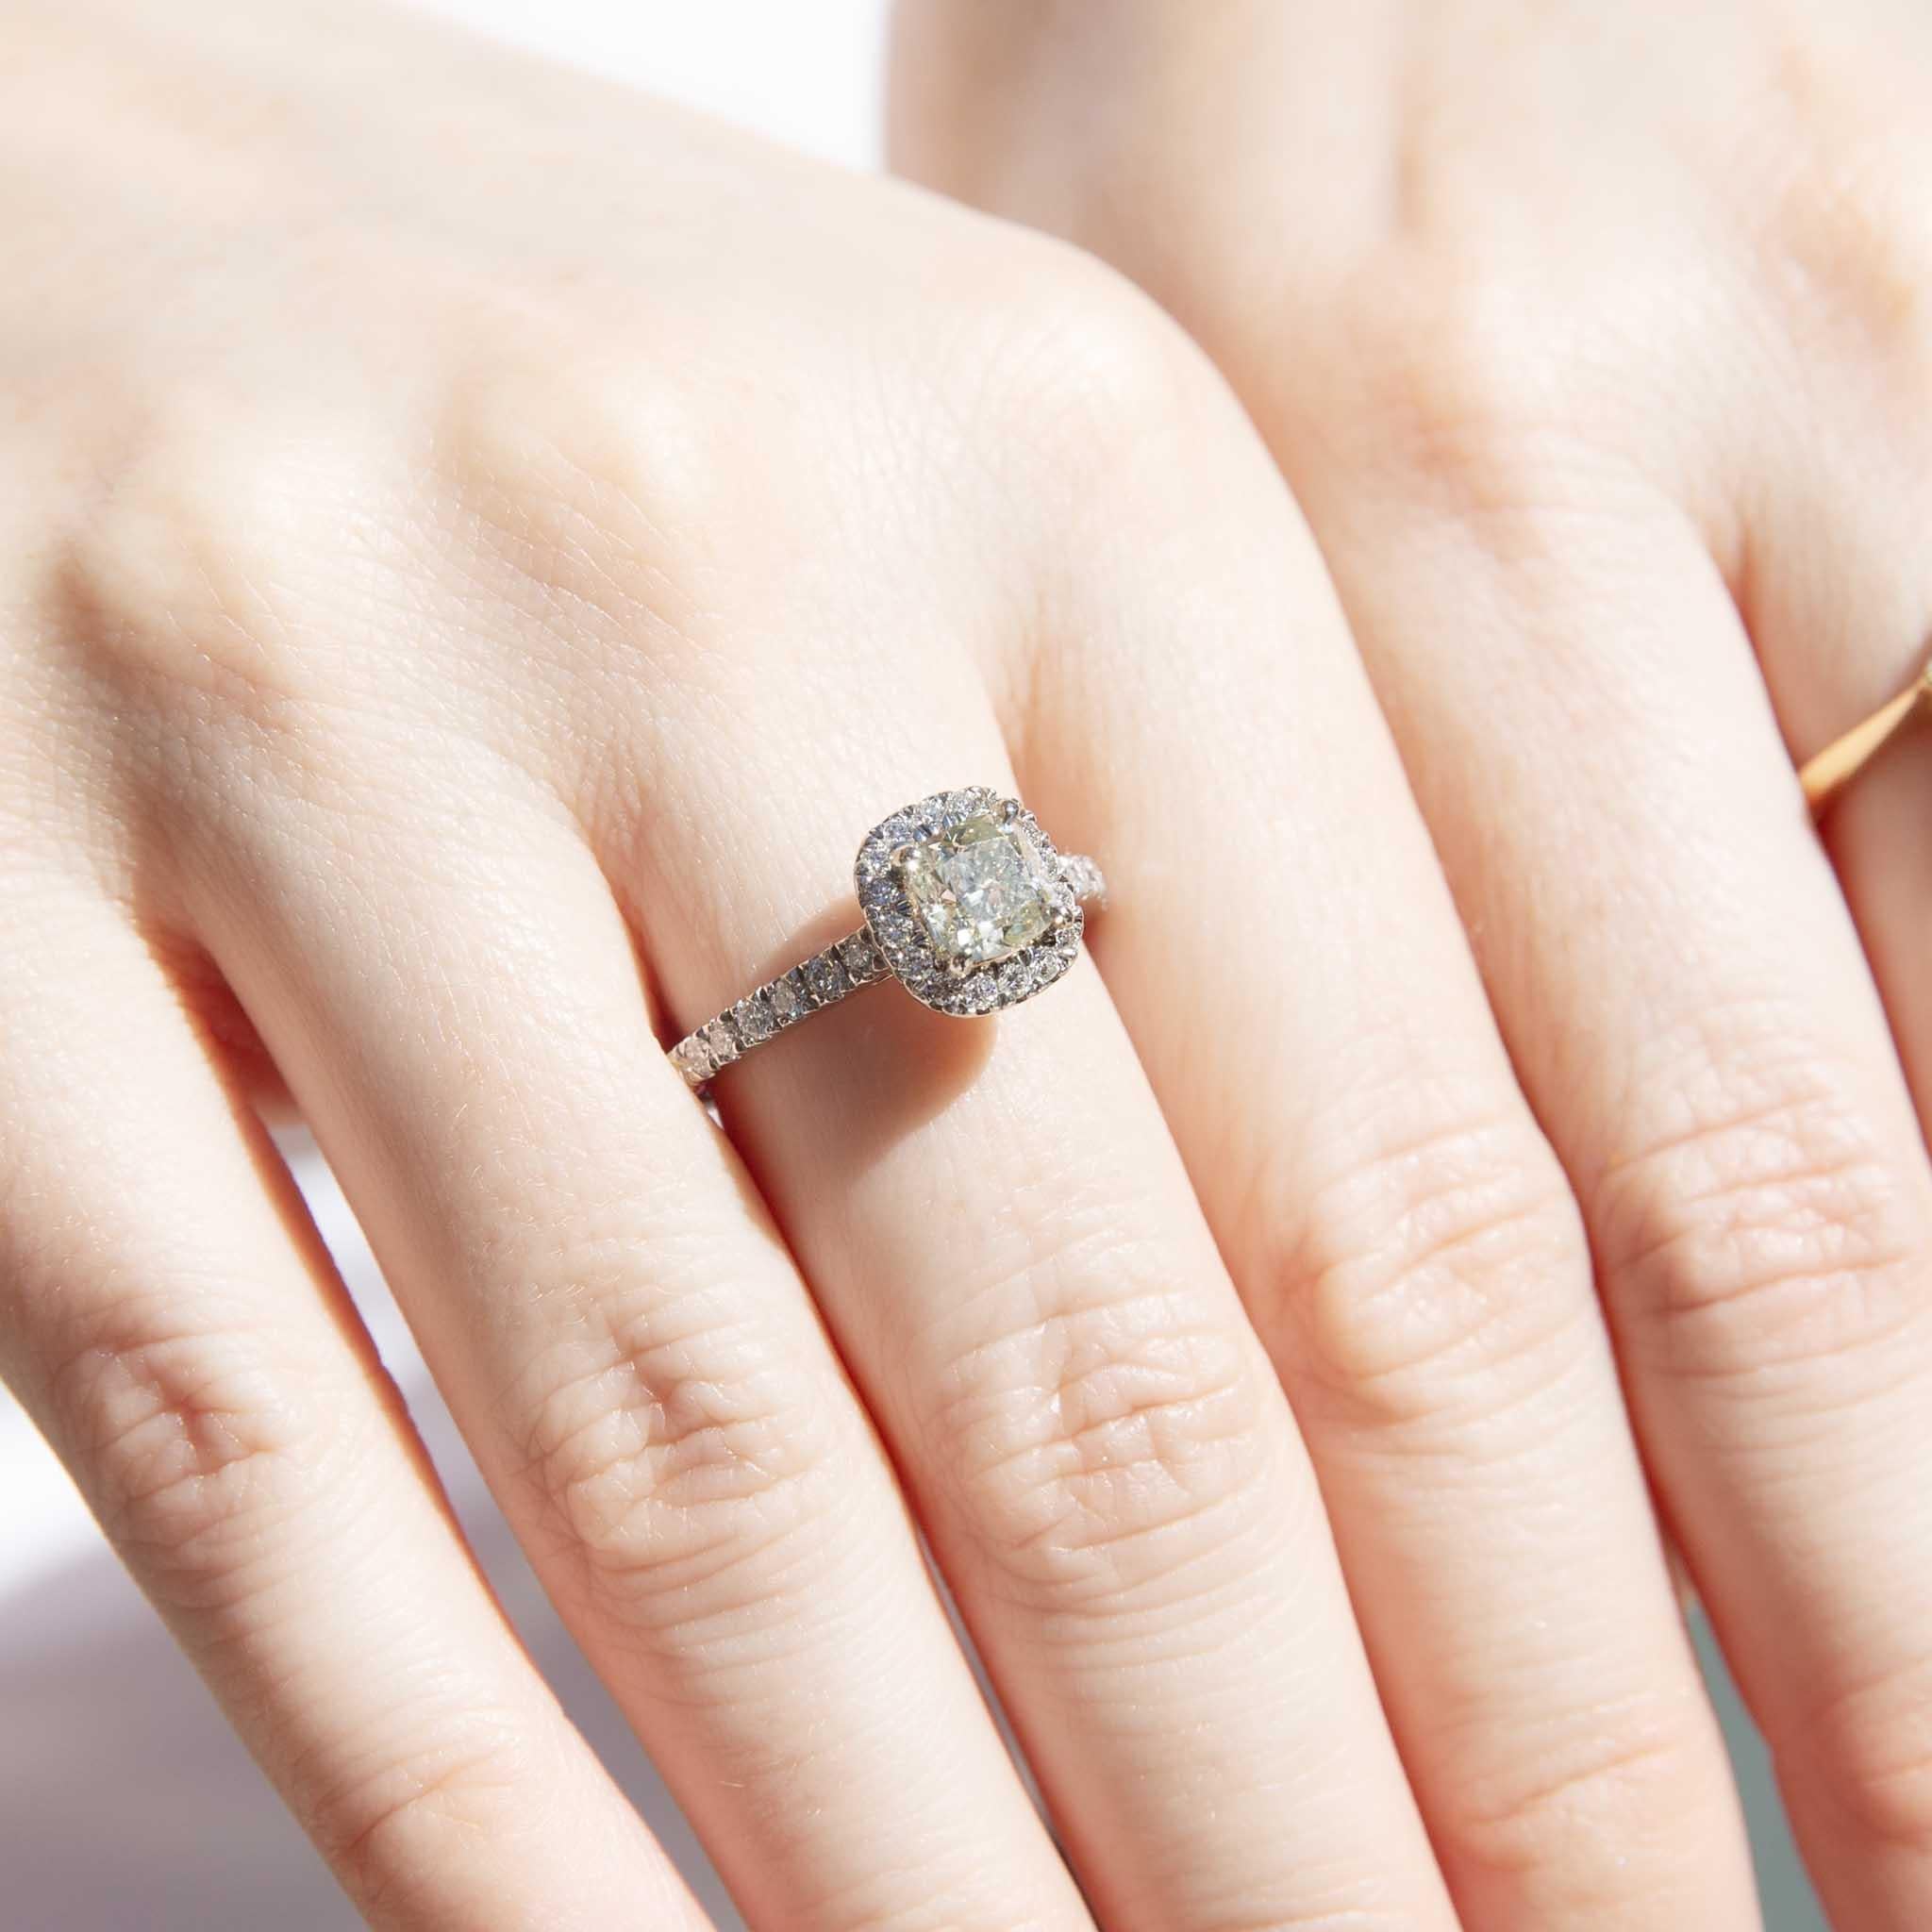 Unser atemberaubender Soniqa Platinring besteht aus 1,60 Karat Diamanten. Der zentrale IGI-zertifizierte Diamant im Kissenschliff ruht in einem Halo aus schimmernden kleineren Diamanten und weiteren Diamanten, die kaskadenförmig an den Schultern